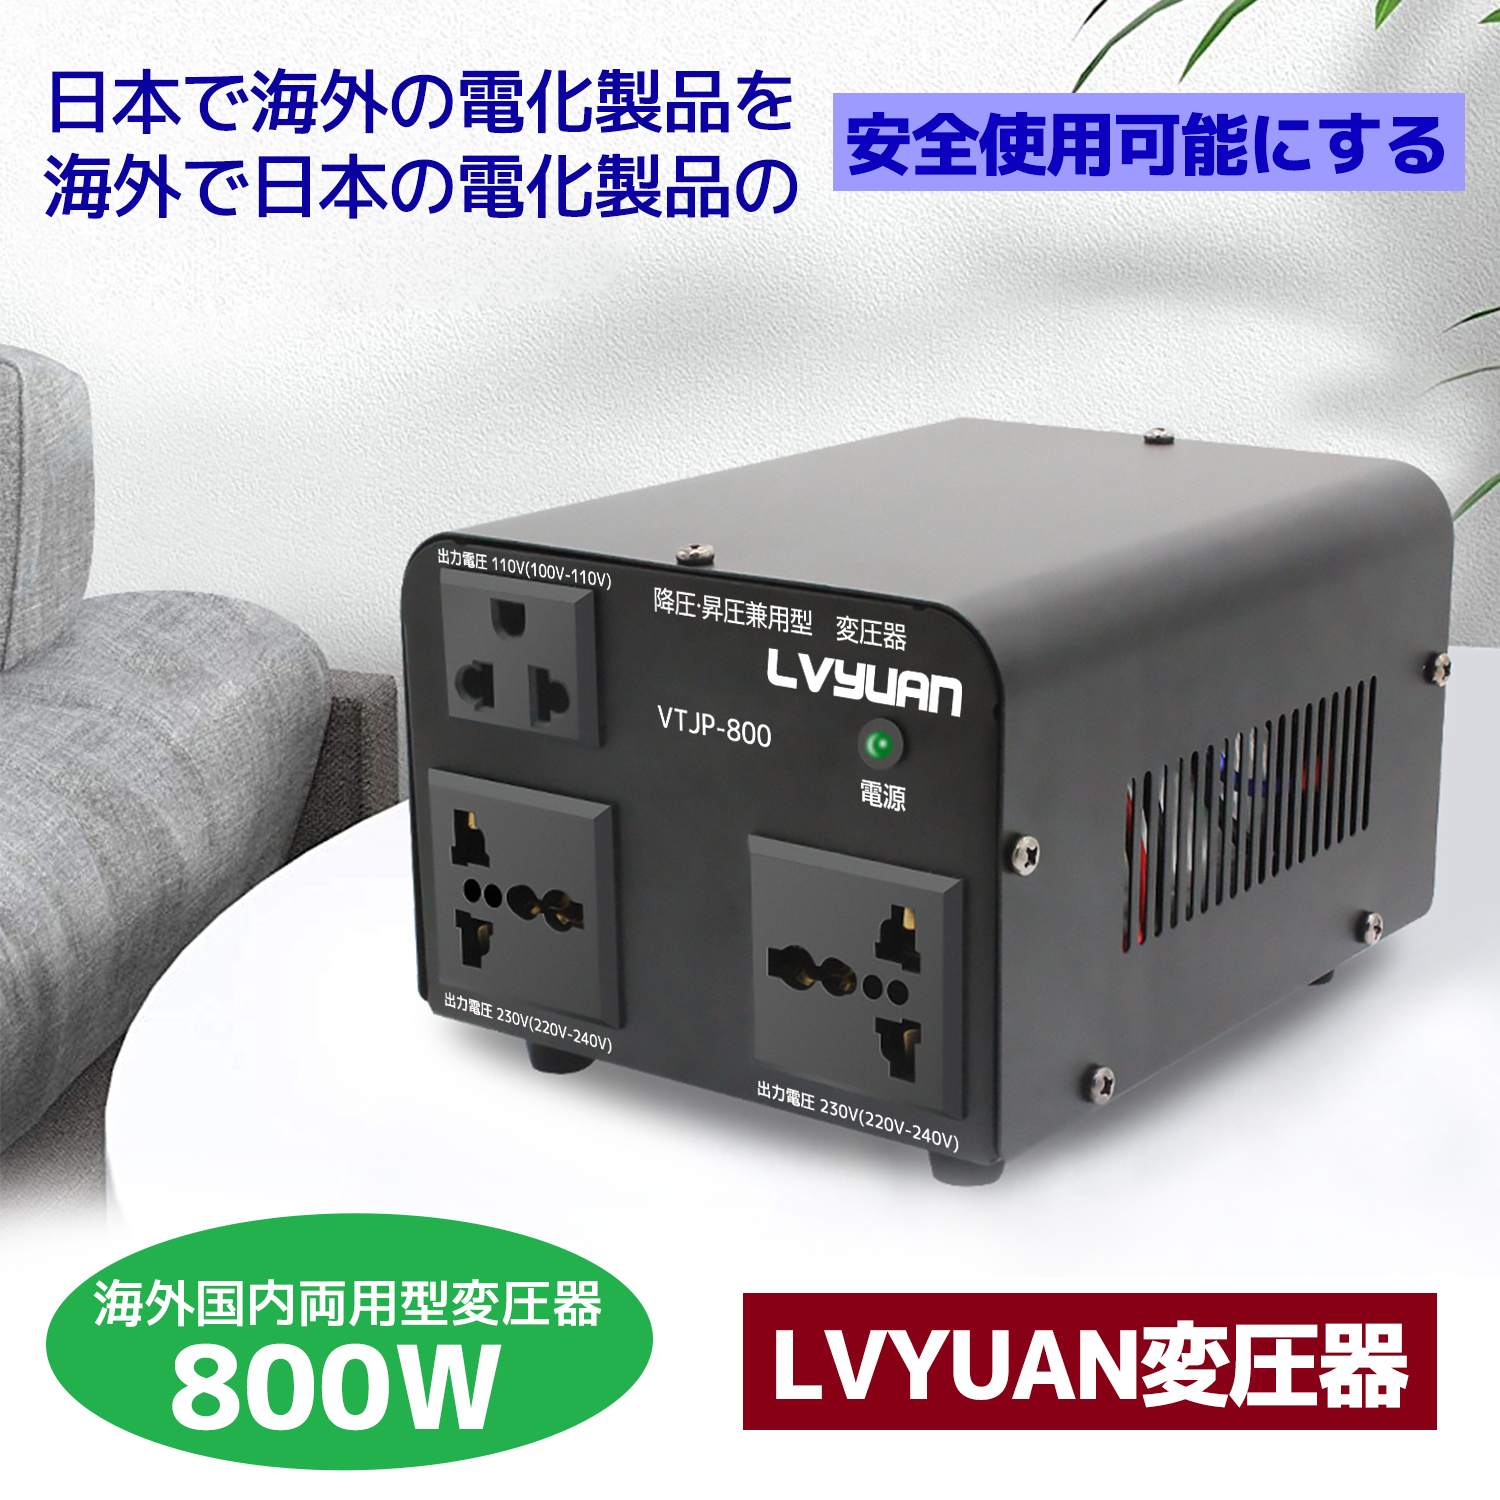 変更OK Yinleader アップトランス ダウントランス 2000W 海外国内両用型変圧器 降圧・昇圧兼用型 変圧器 ポータブルトランス  【海外機器対応 変